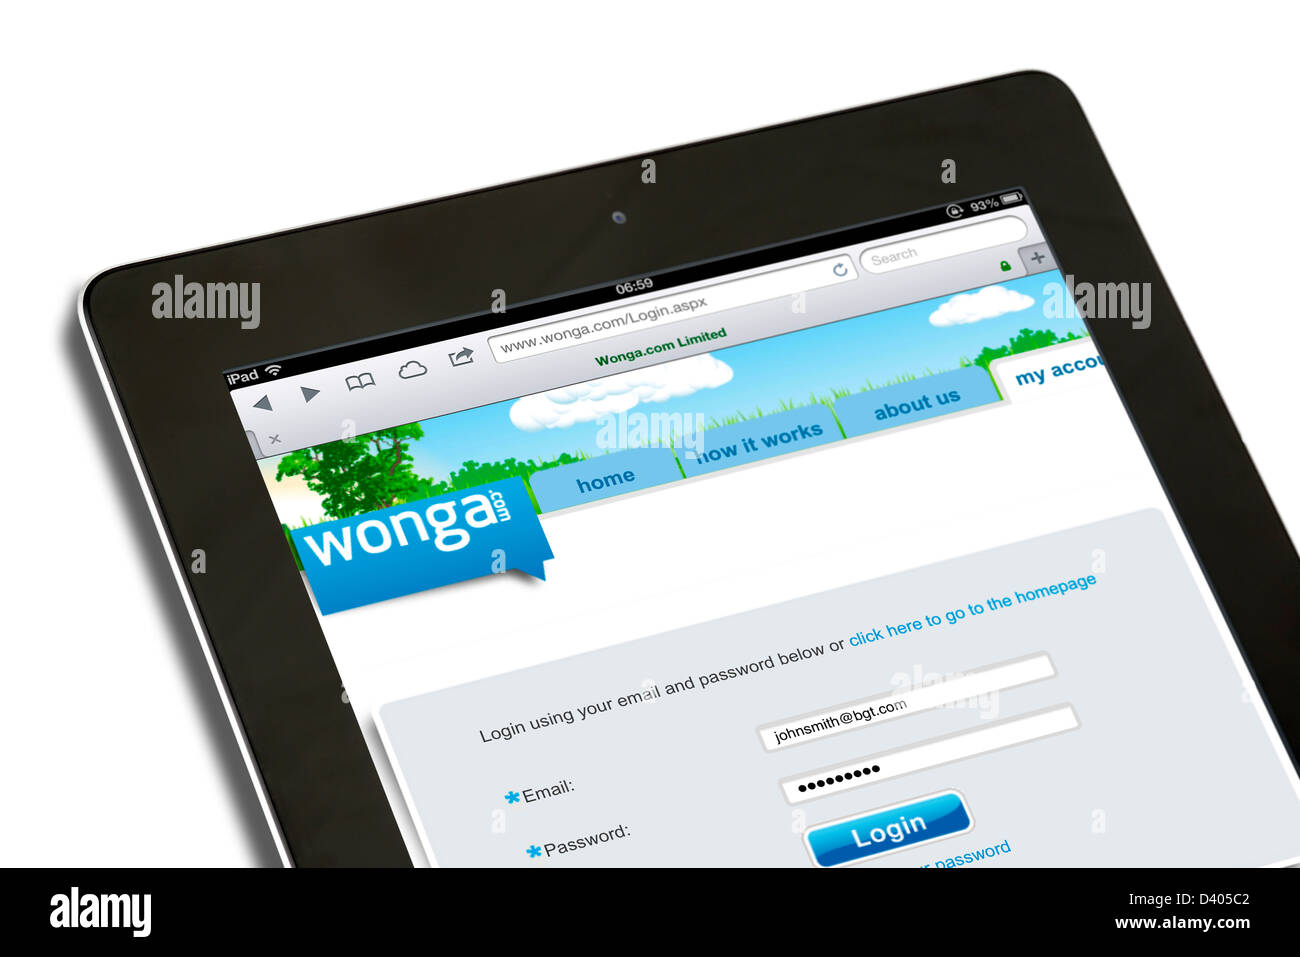 Accesso al Wonga.com paday sito di prestito su una quarta generazione di iPad, REGNO UNITO Foto Stock